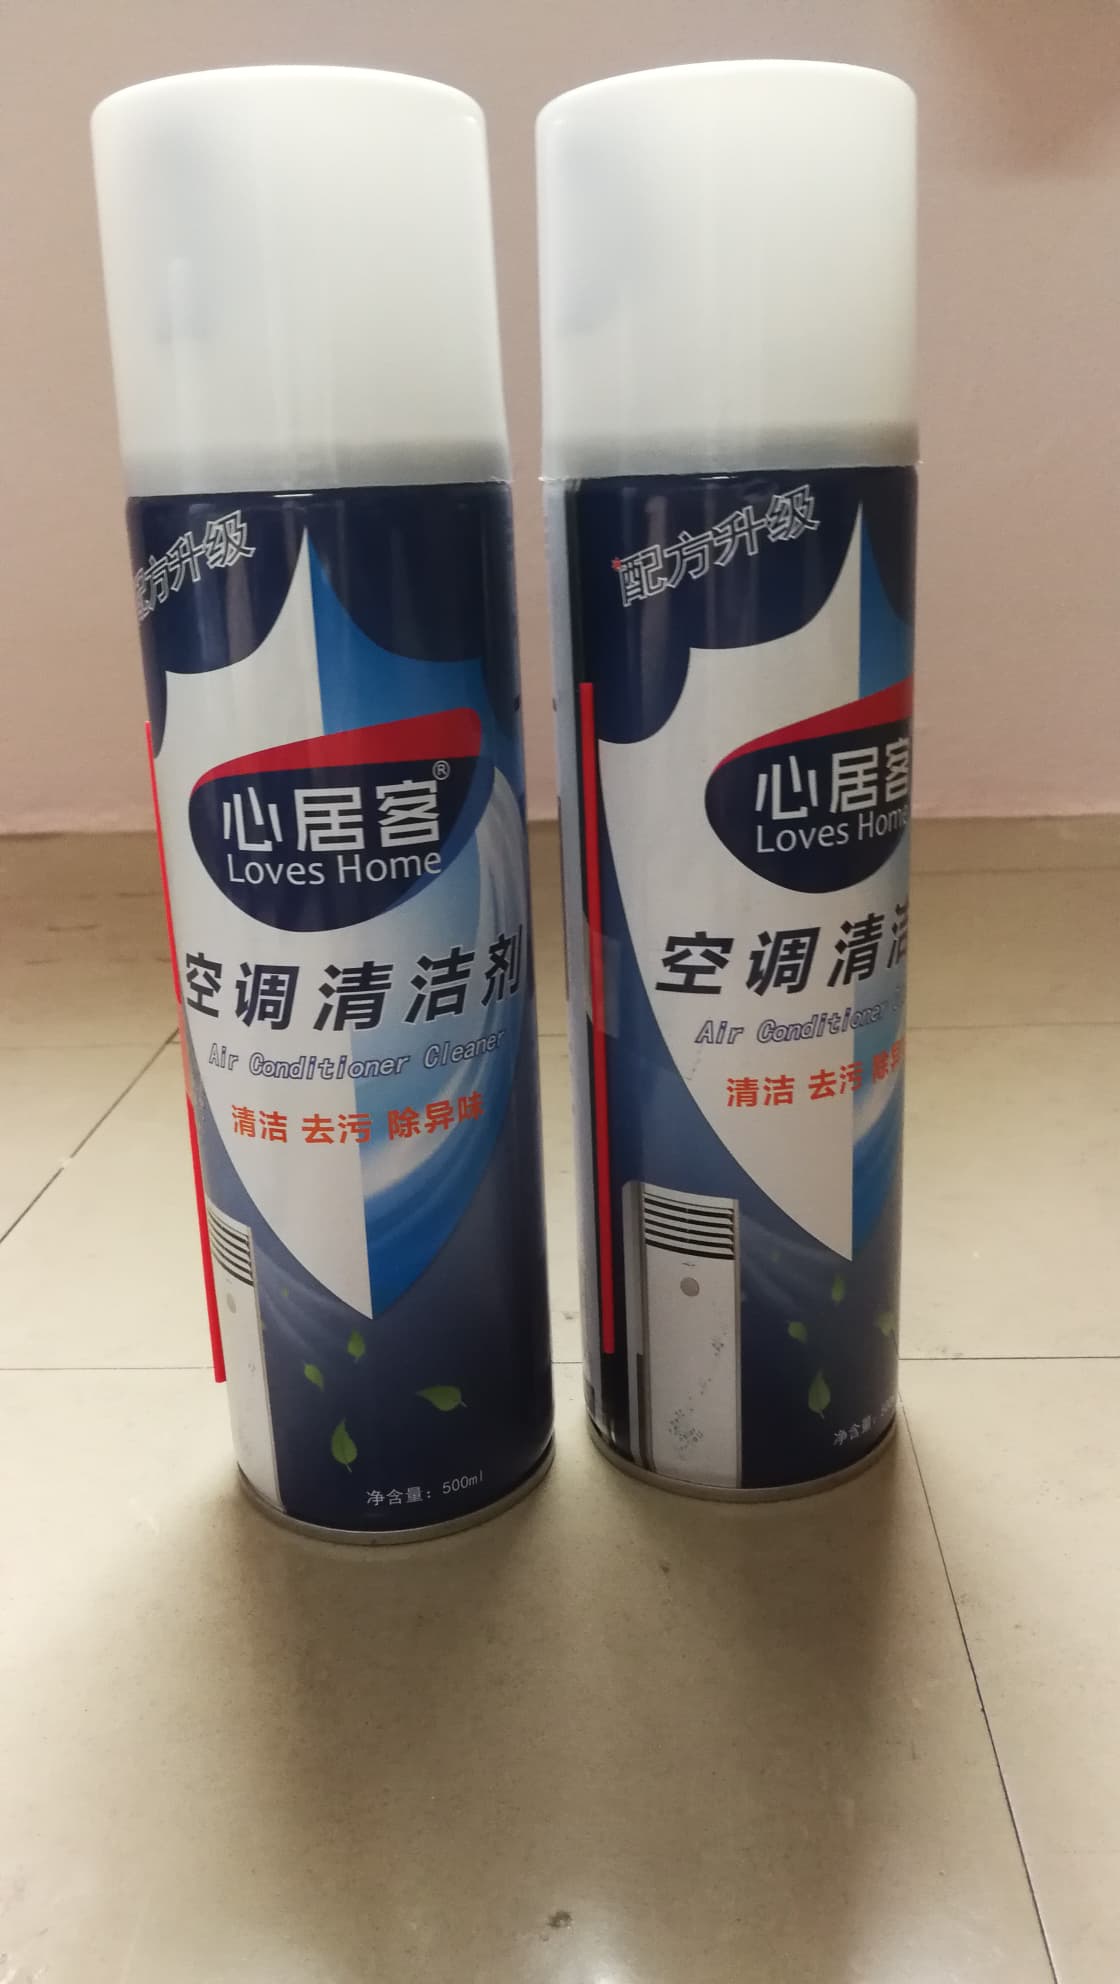 สเปรย์โฟมล้างแอร์ สินค้านำเข้าจากประเทศจีน สำหรับทำความสะอาด ล้างแผงคอลย์เย็นเครื่องปรับอากาศ ทุกรุ่น ทุกยี่ห้อ *1 กระป๋อง